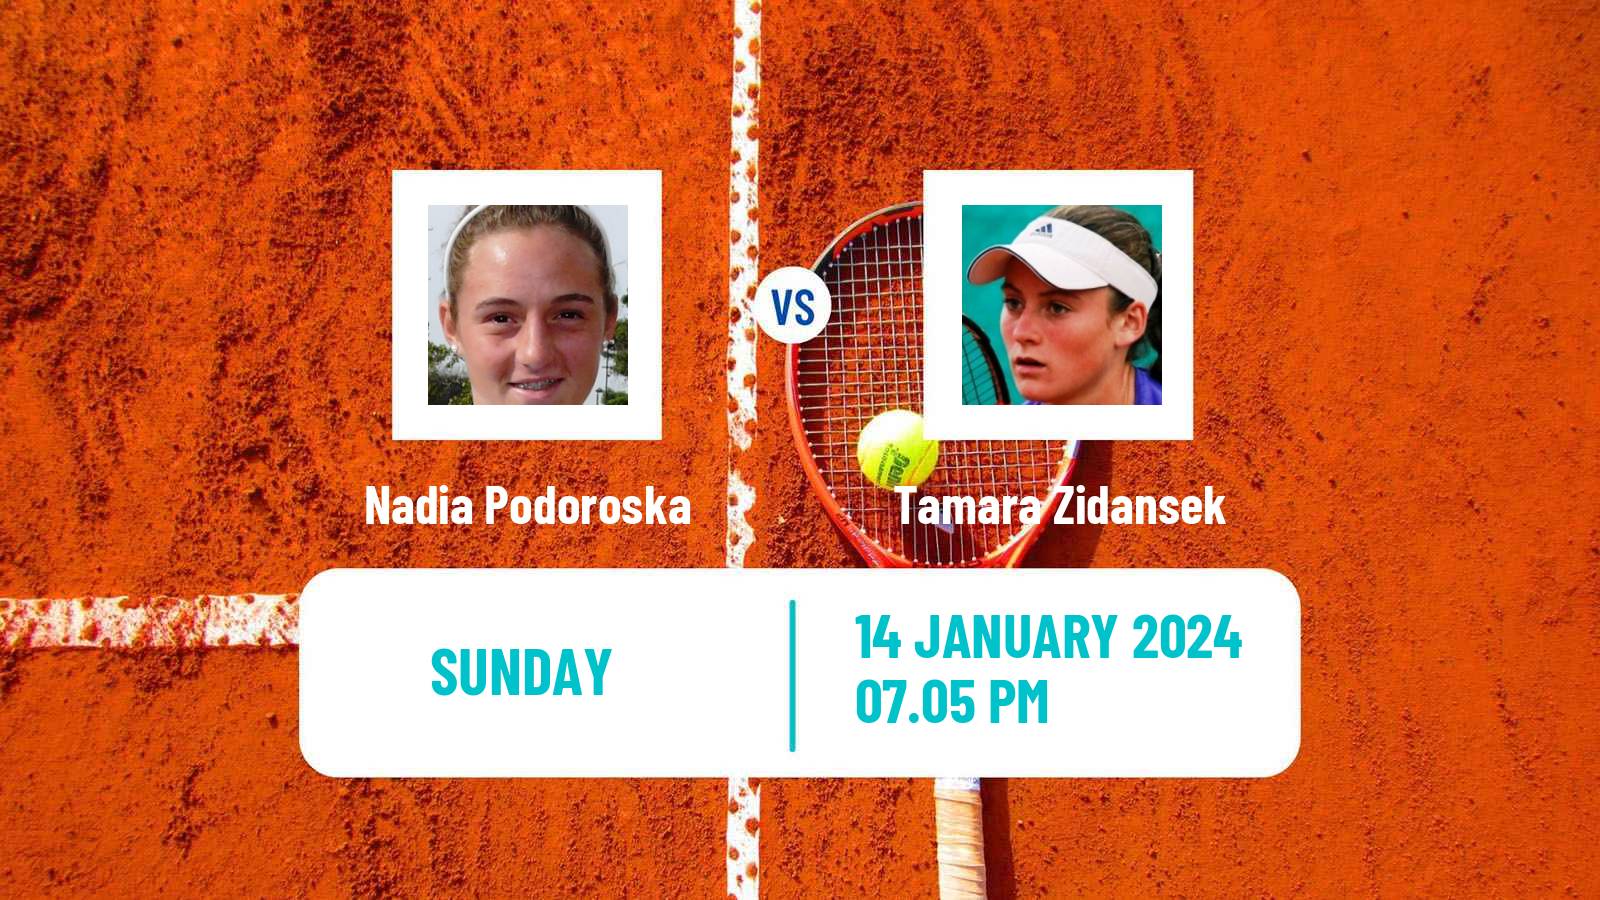 Tennis WTA Australian Open Nadia Podoroska - Tamara Zidansek